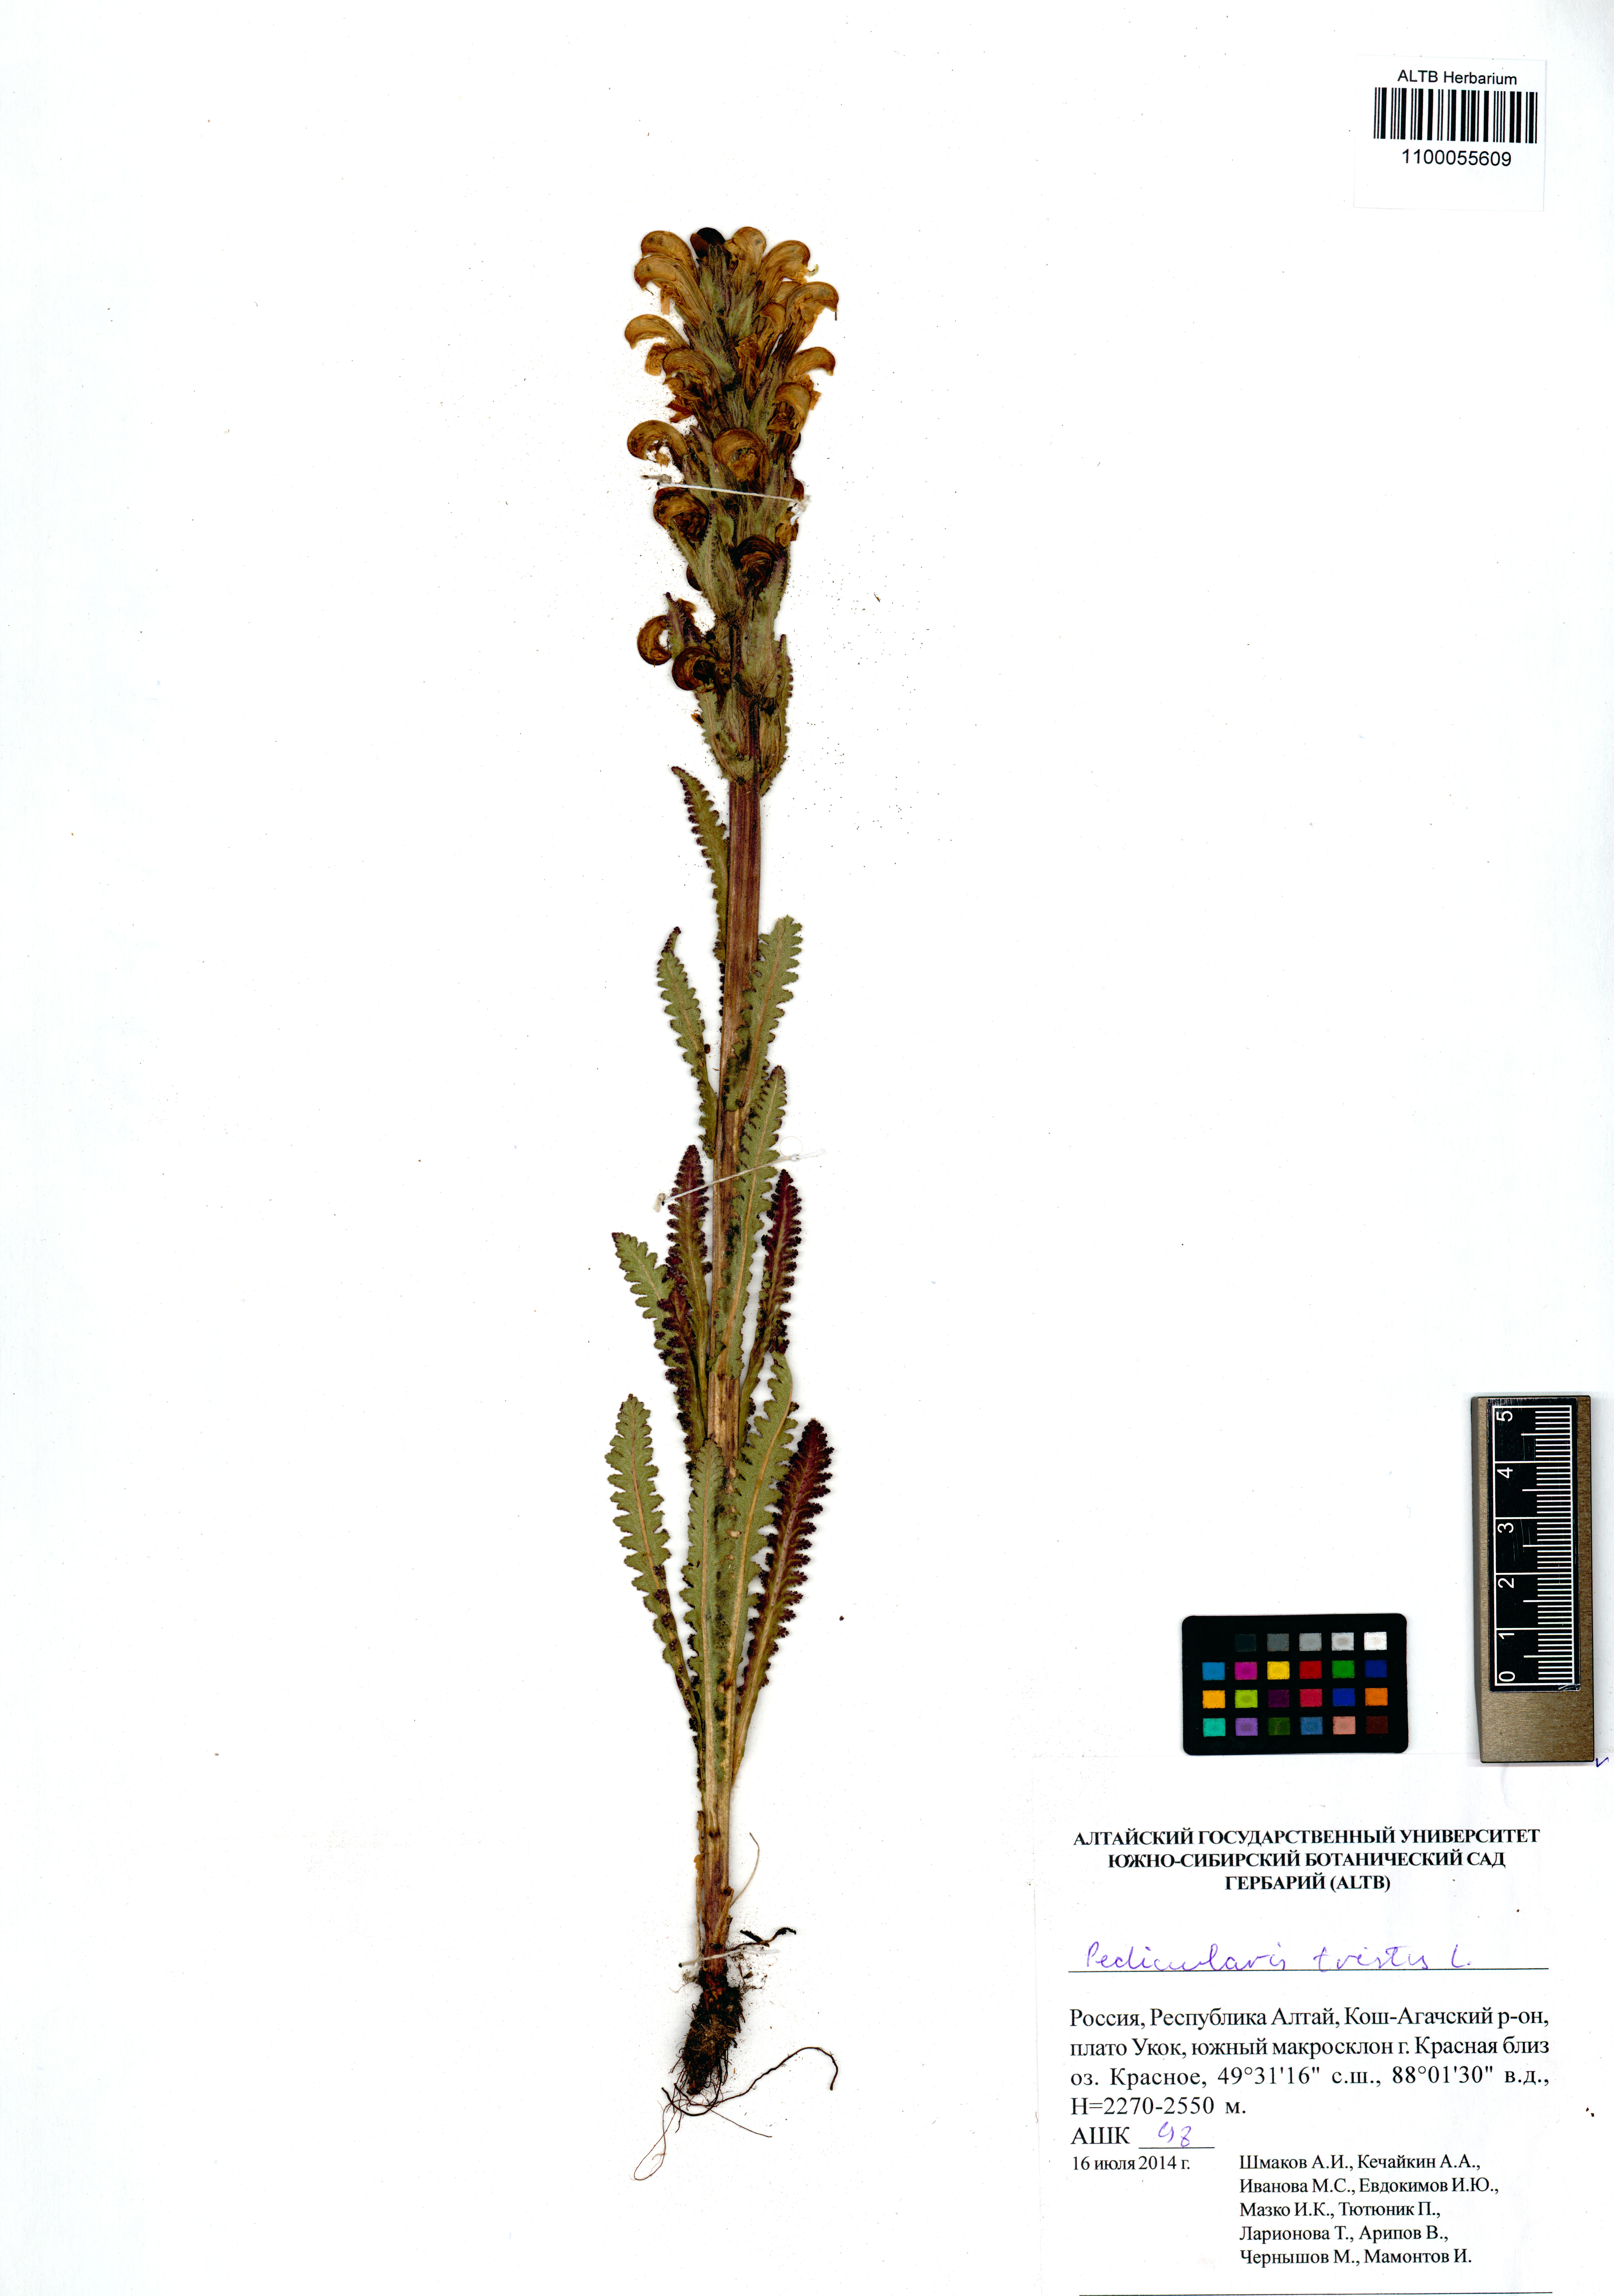 Pedicularis tristis L.